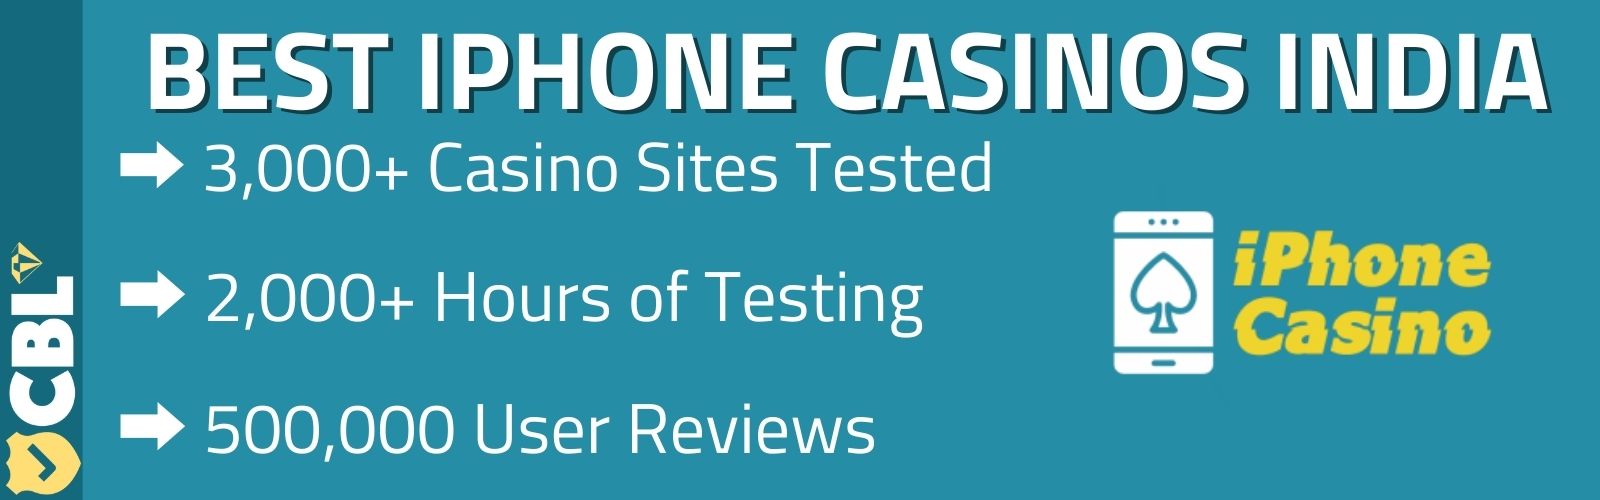 iphone casino apps